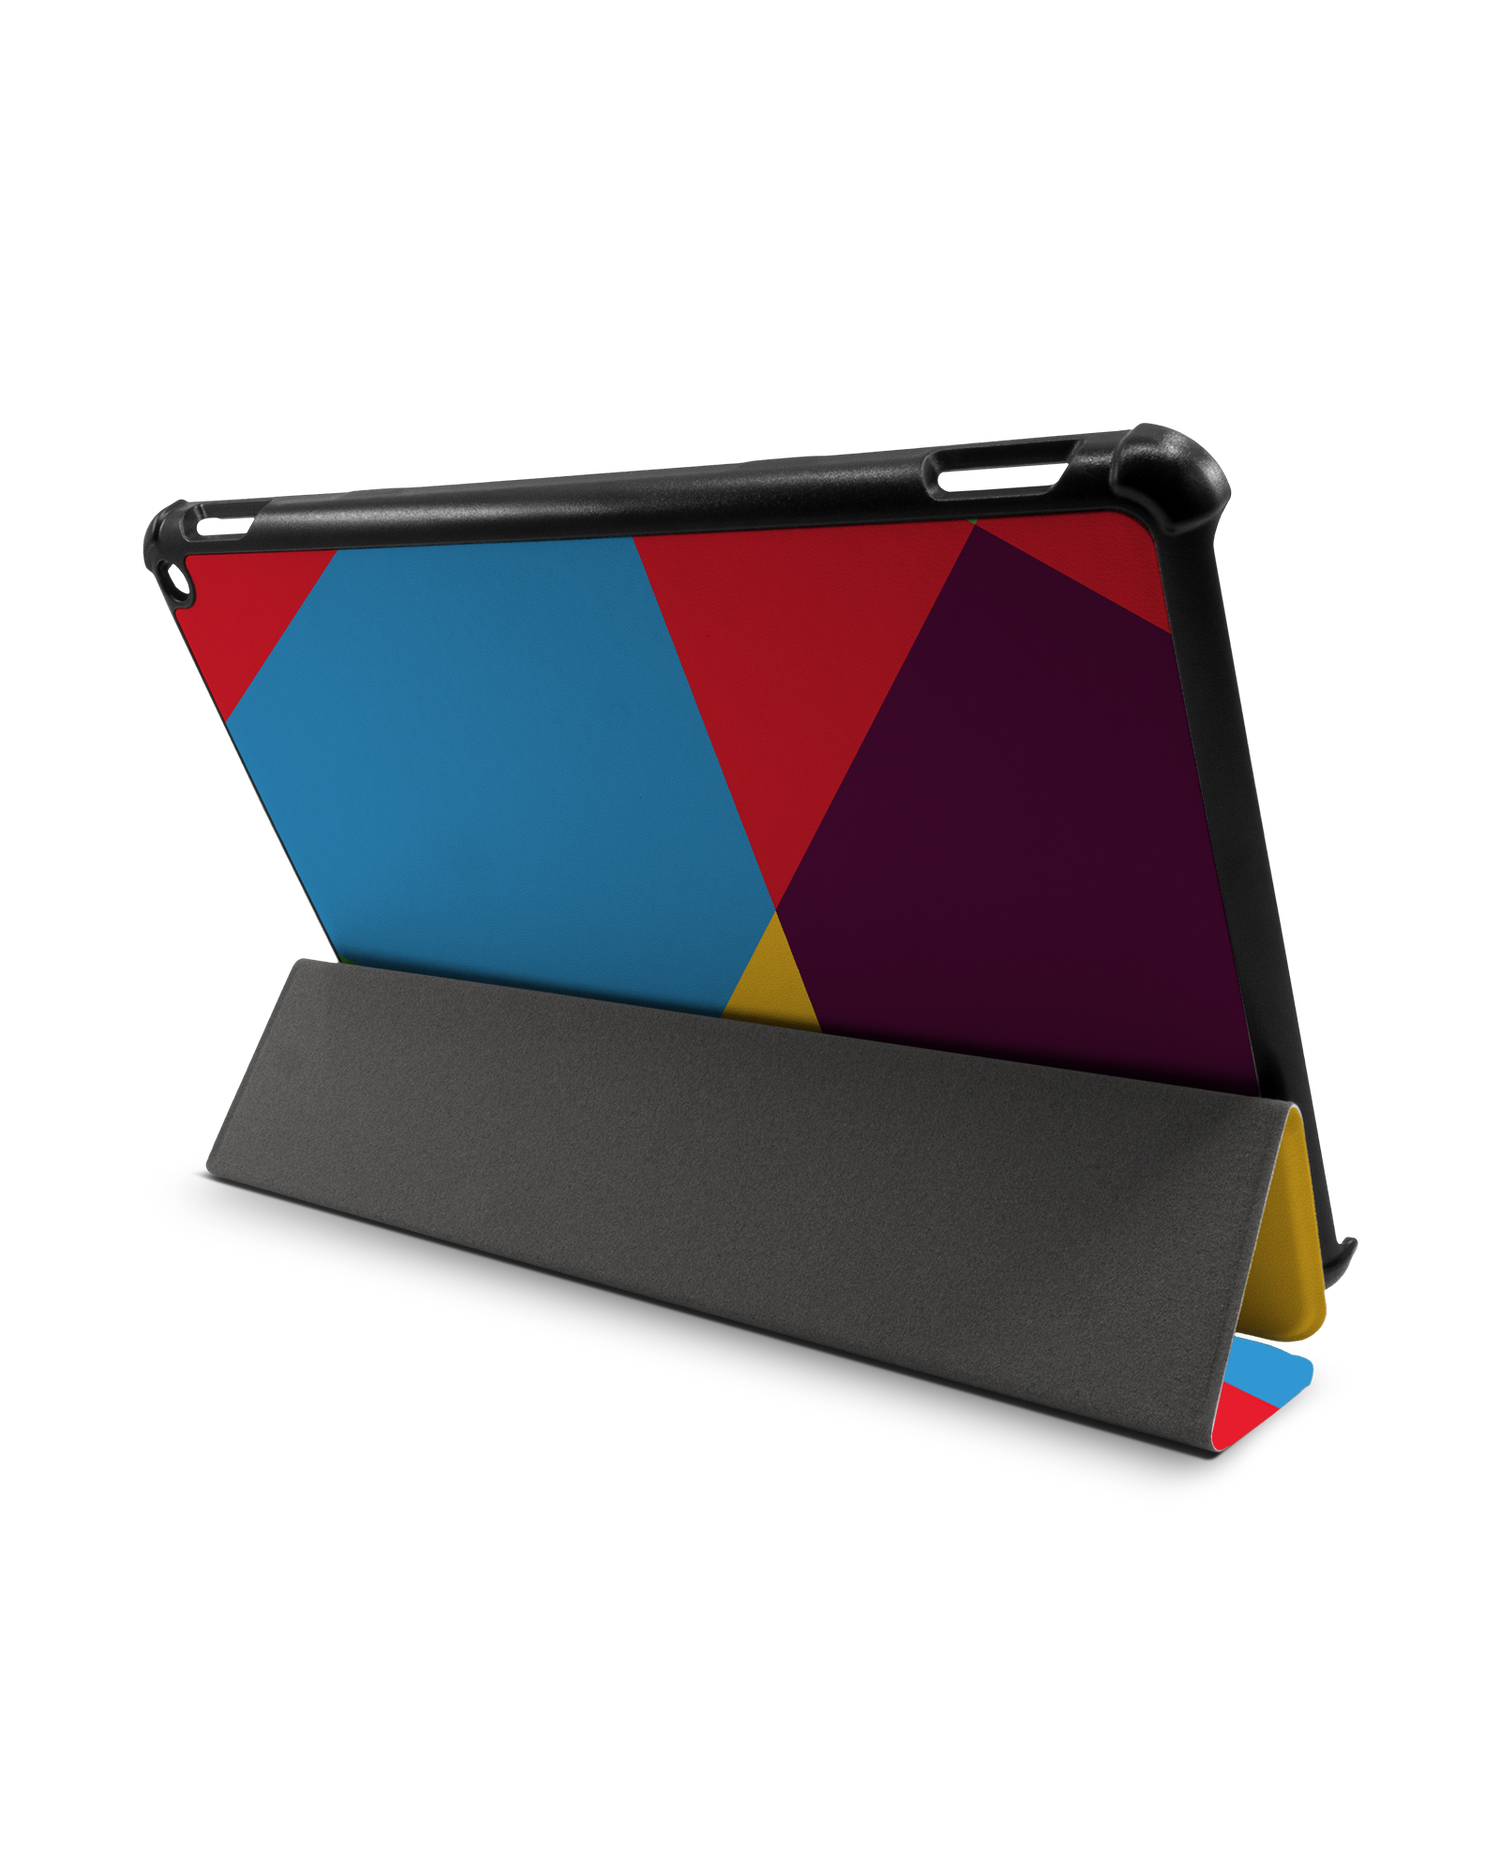 Pringles Abstract Tablet Smart Case für Amazon Fire HD 10 (2021): Aufgestellt im Querformat